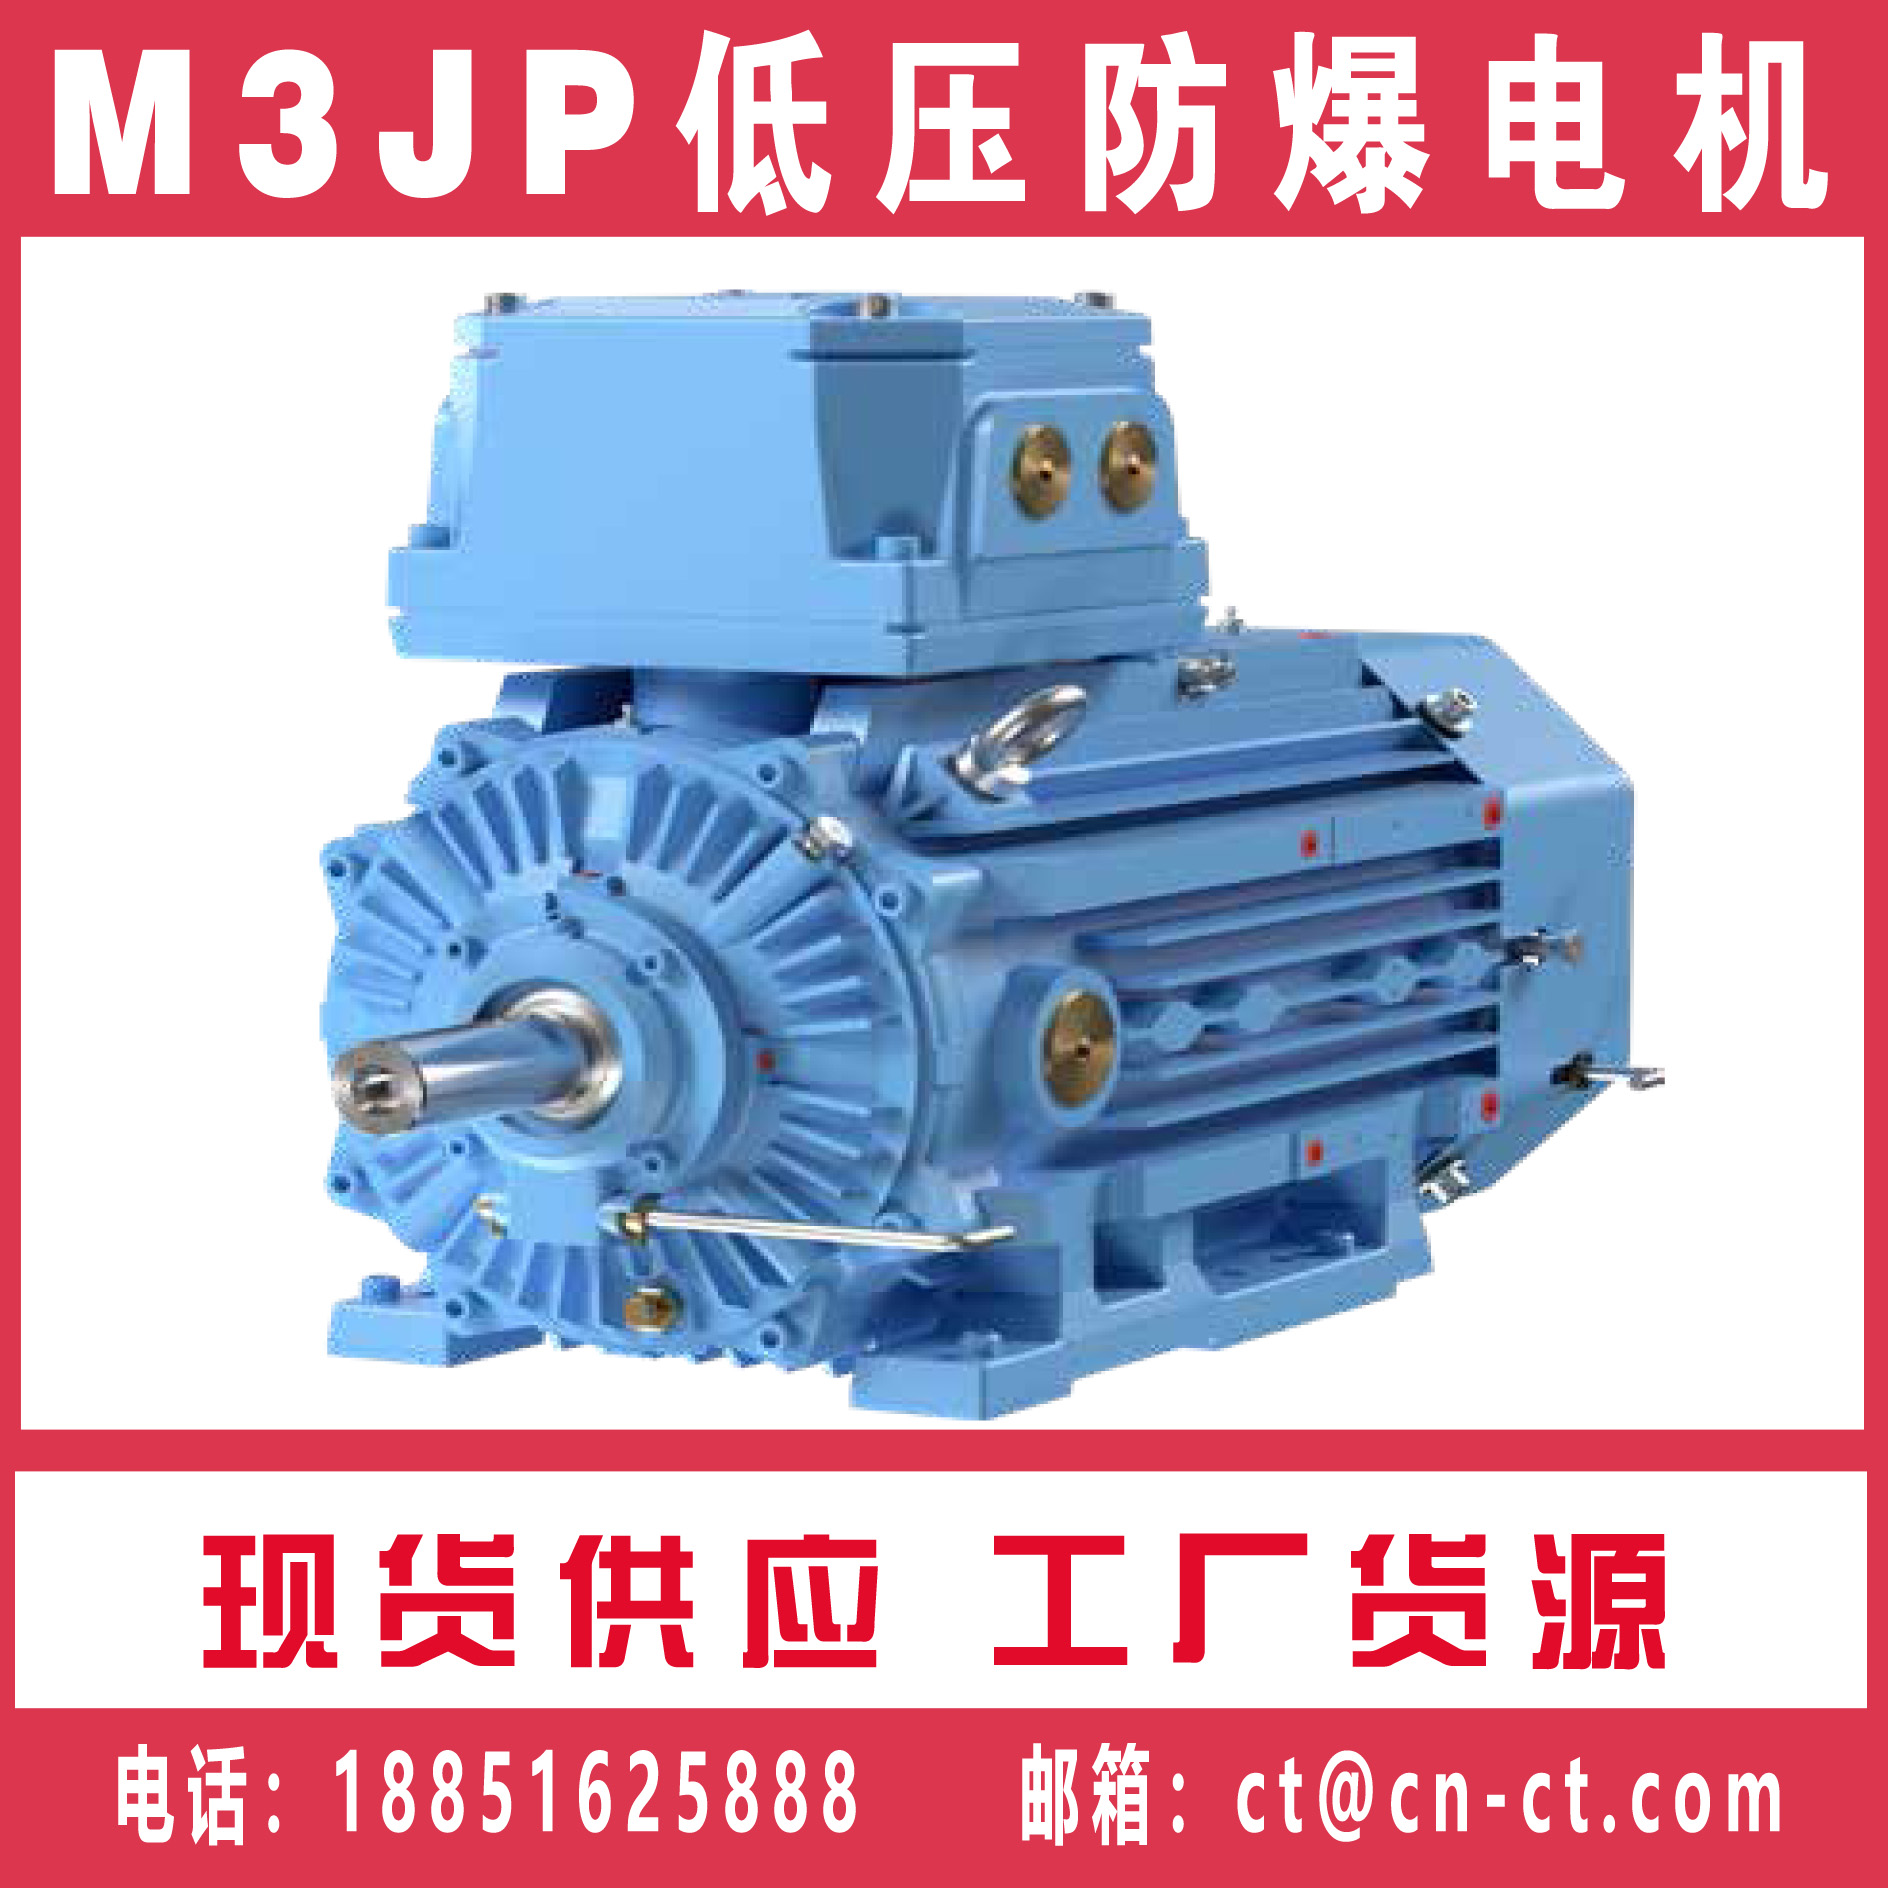 IE3 M3JP低压防爆电机